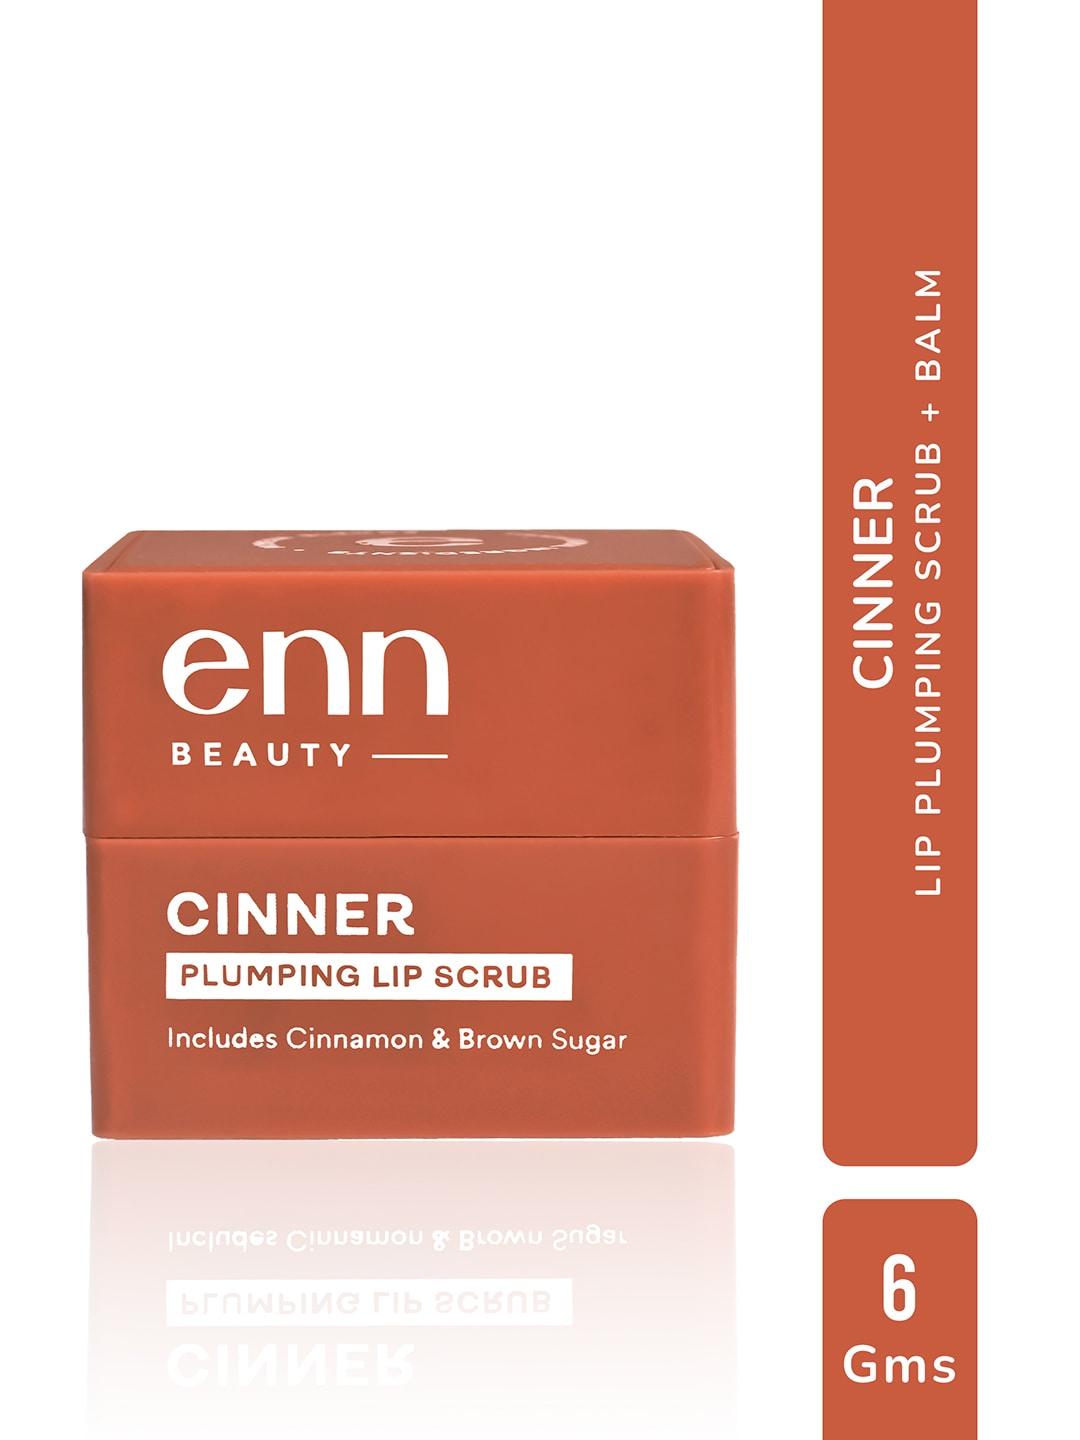 enn-plumping-lip-scrub-with-cinnamon-&-brown-sugar-6-g---cinner